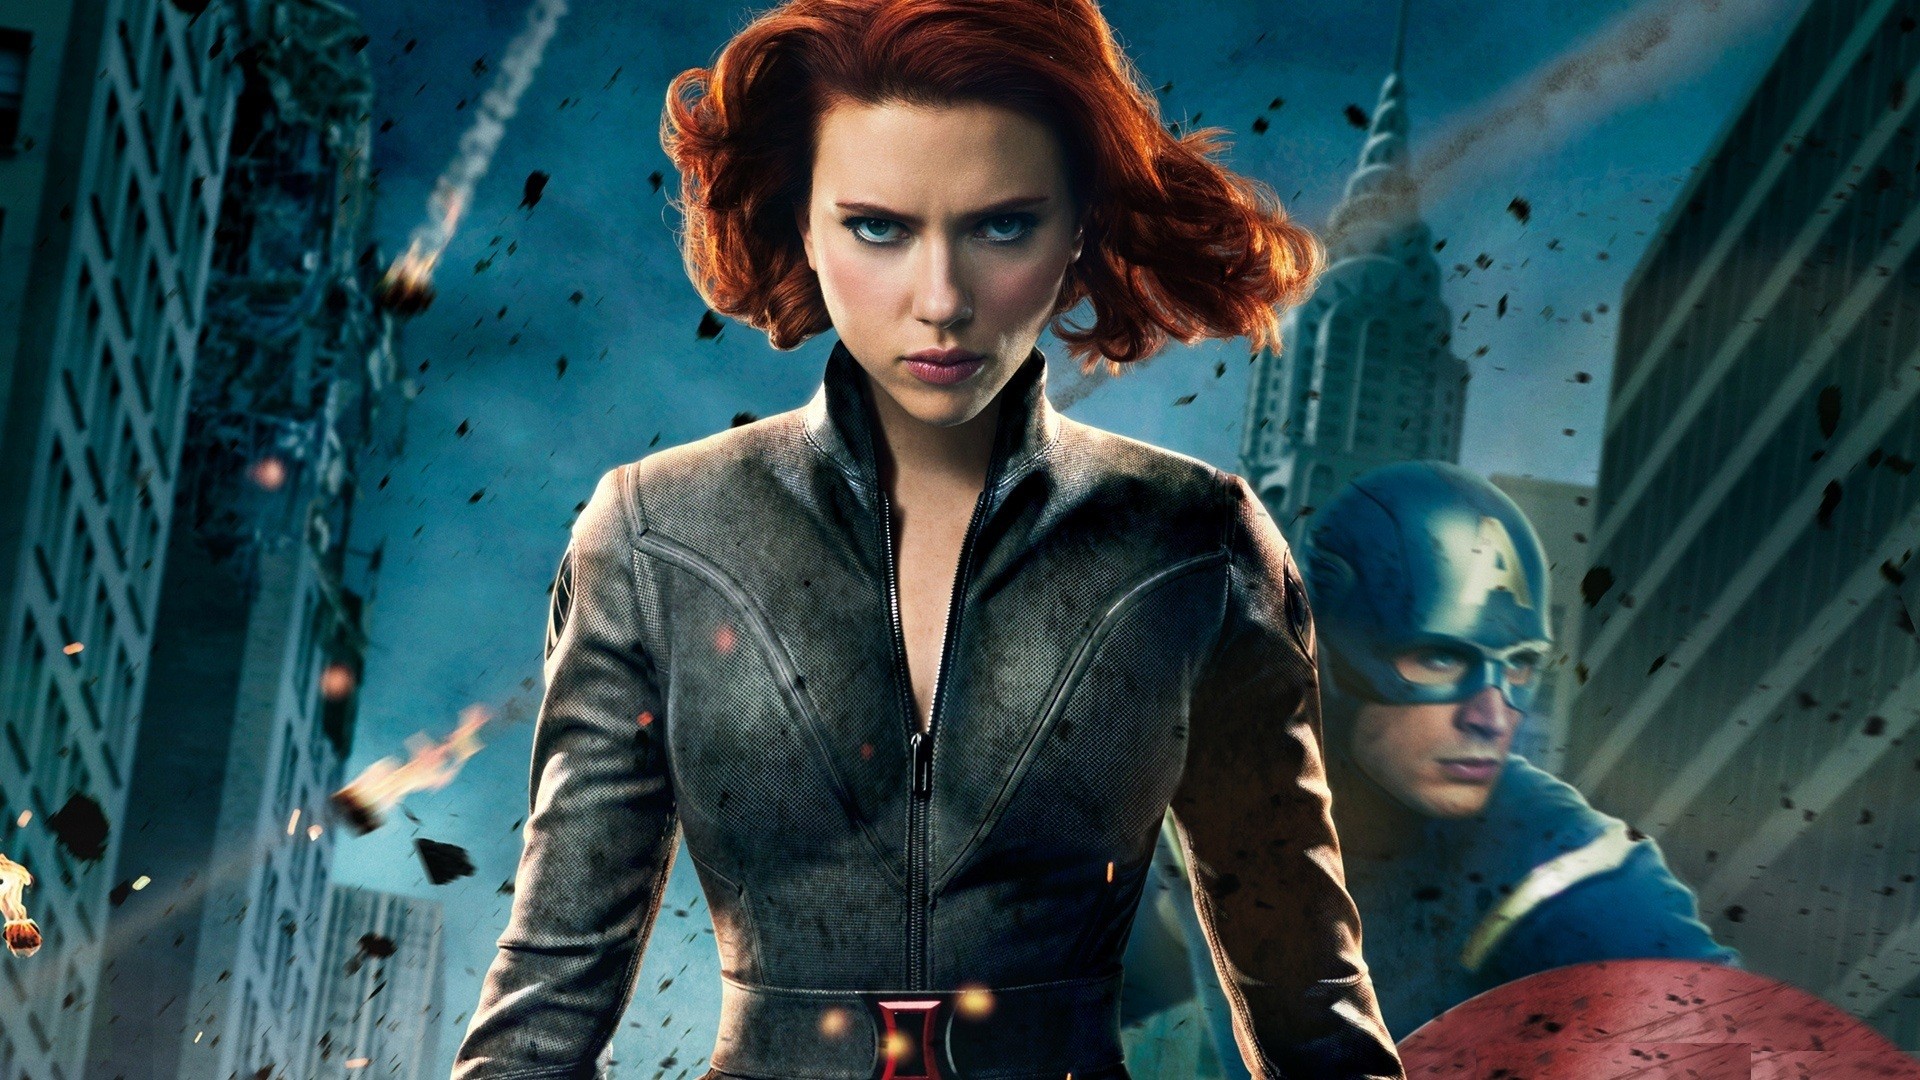 Scarlett Johansson, Captain America, Black Widow, Chris Evans, The Avengers (movie) - desktop wallpaper